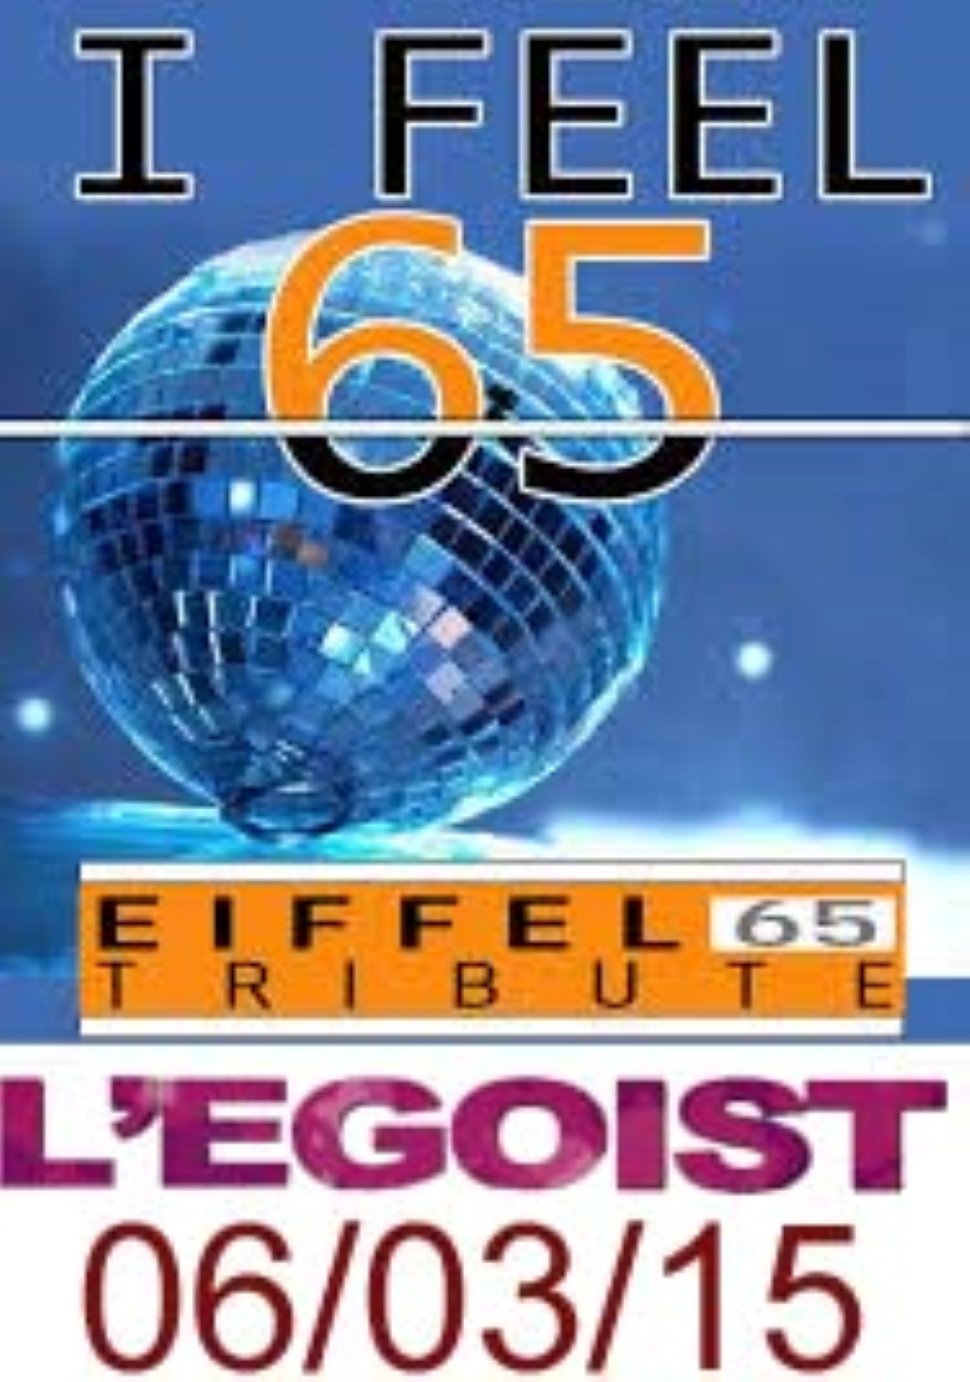 I FEEL 65, EIFFEL 65 Tribute. L'EGOIST!!!